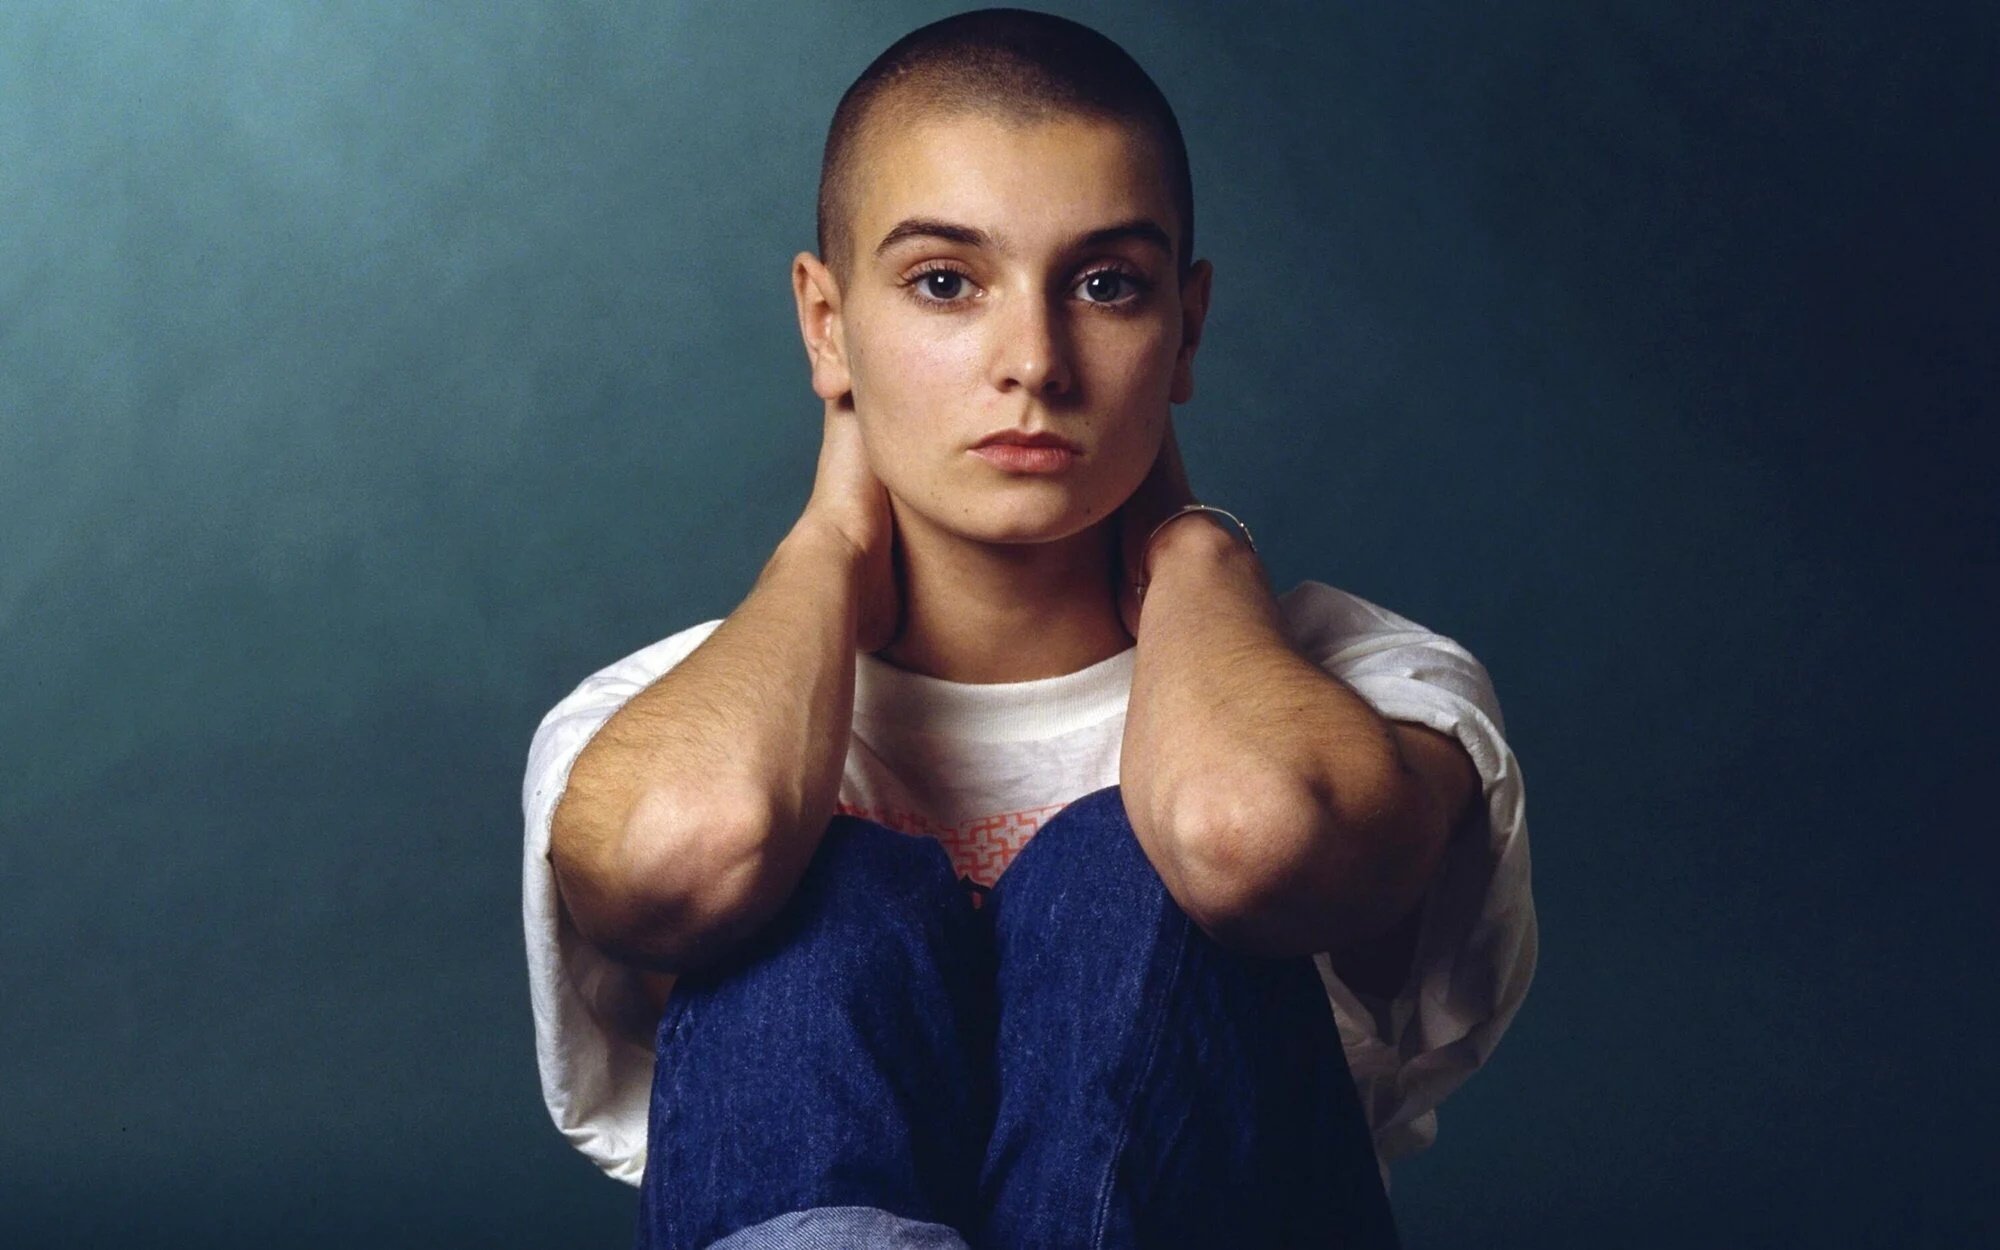 "Vas ser TU qui va convèncer Sinéad perquè es rendís", l'emotiu adeu de Morrissey a Sinéad O'Connor